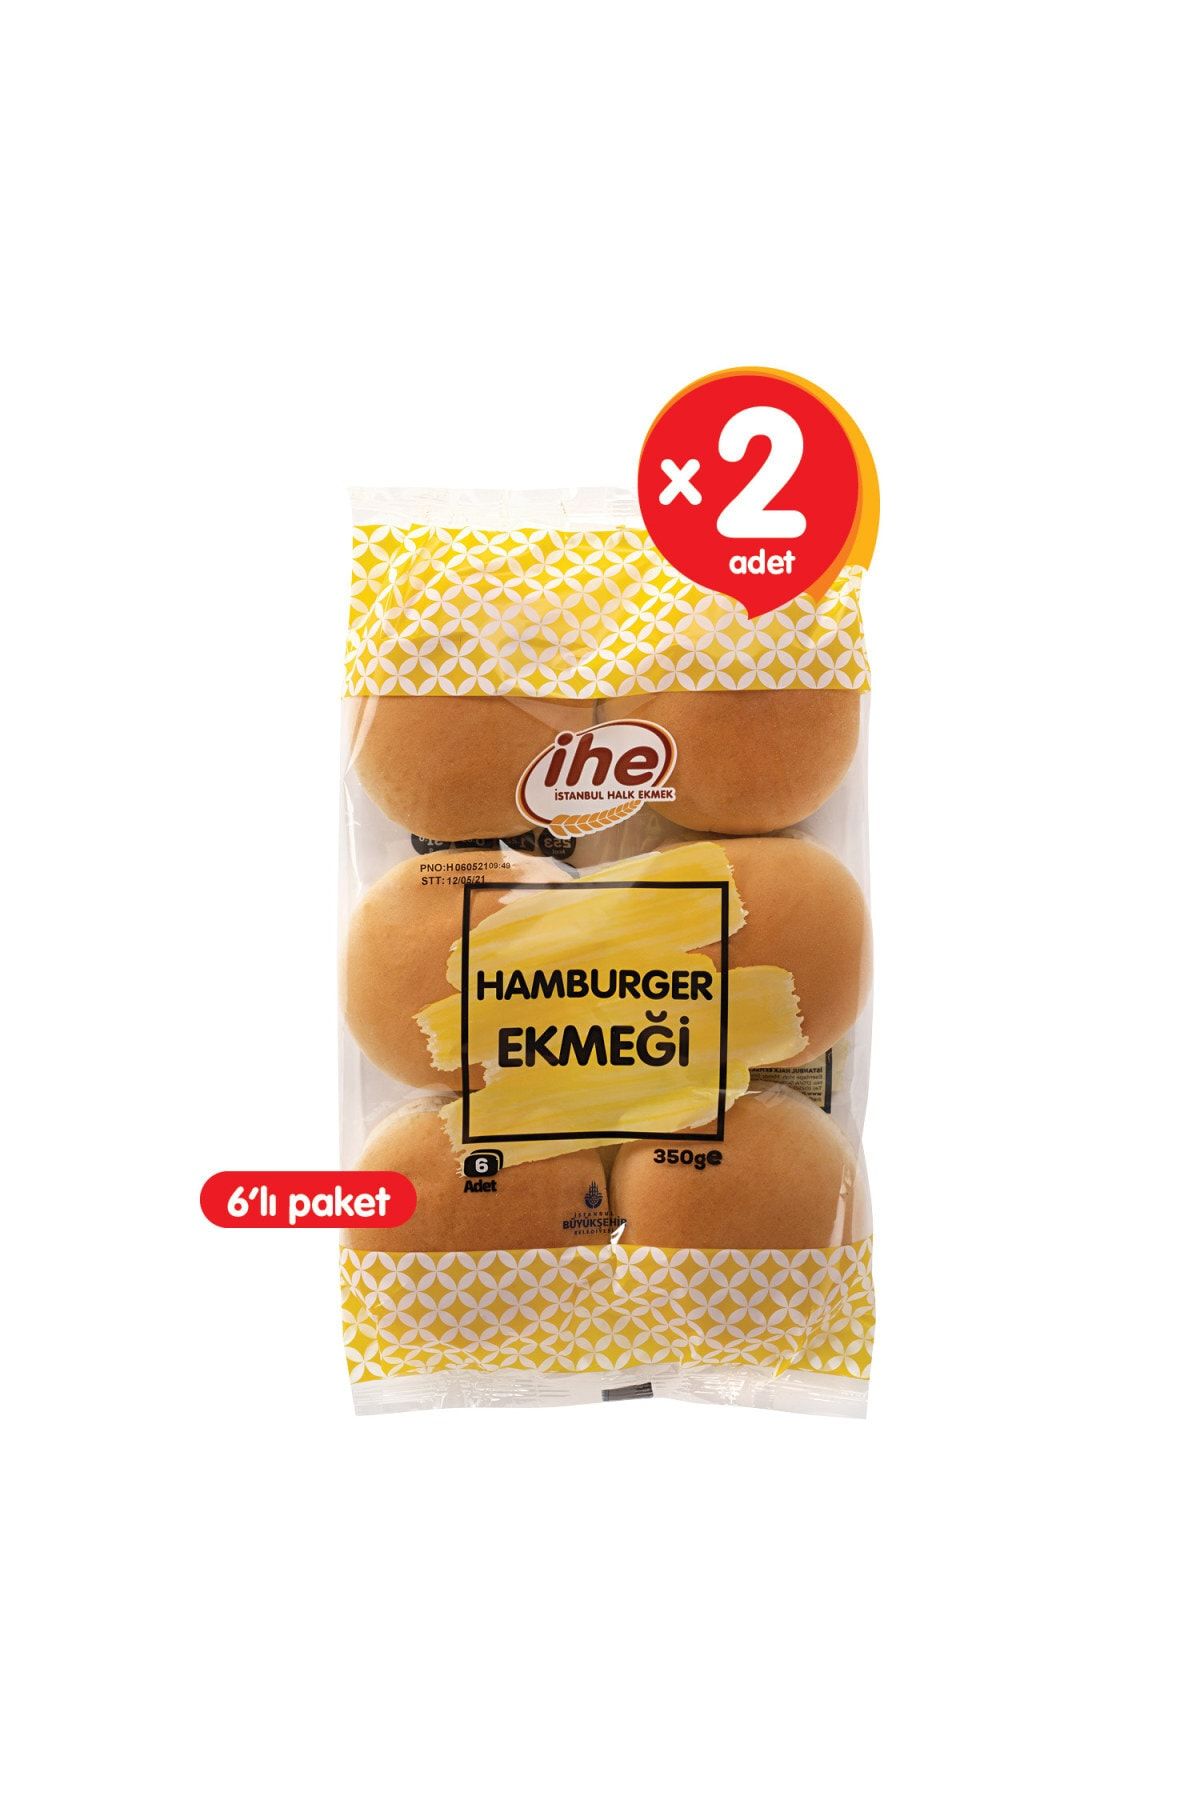 İhe Hamburger Ekmeği 350 G (2 ADET)